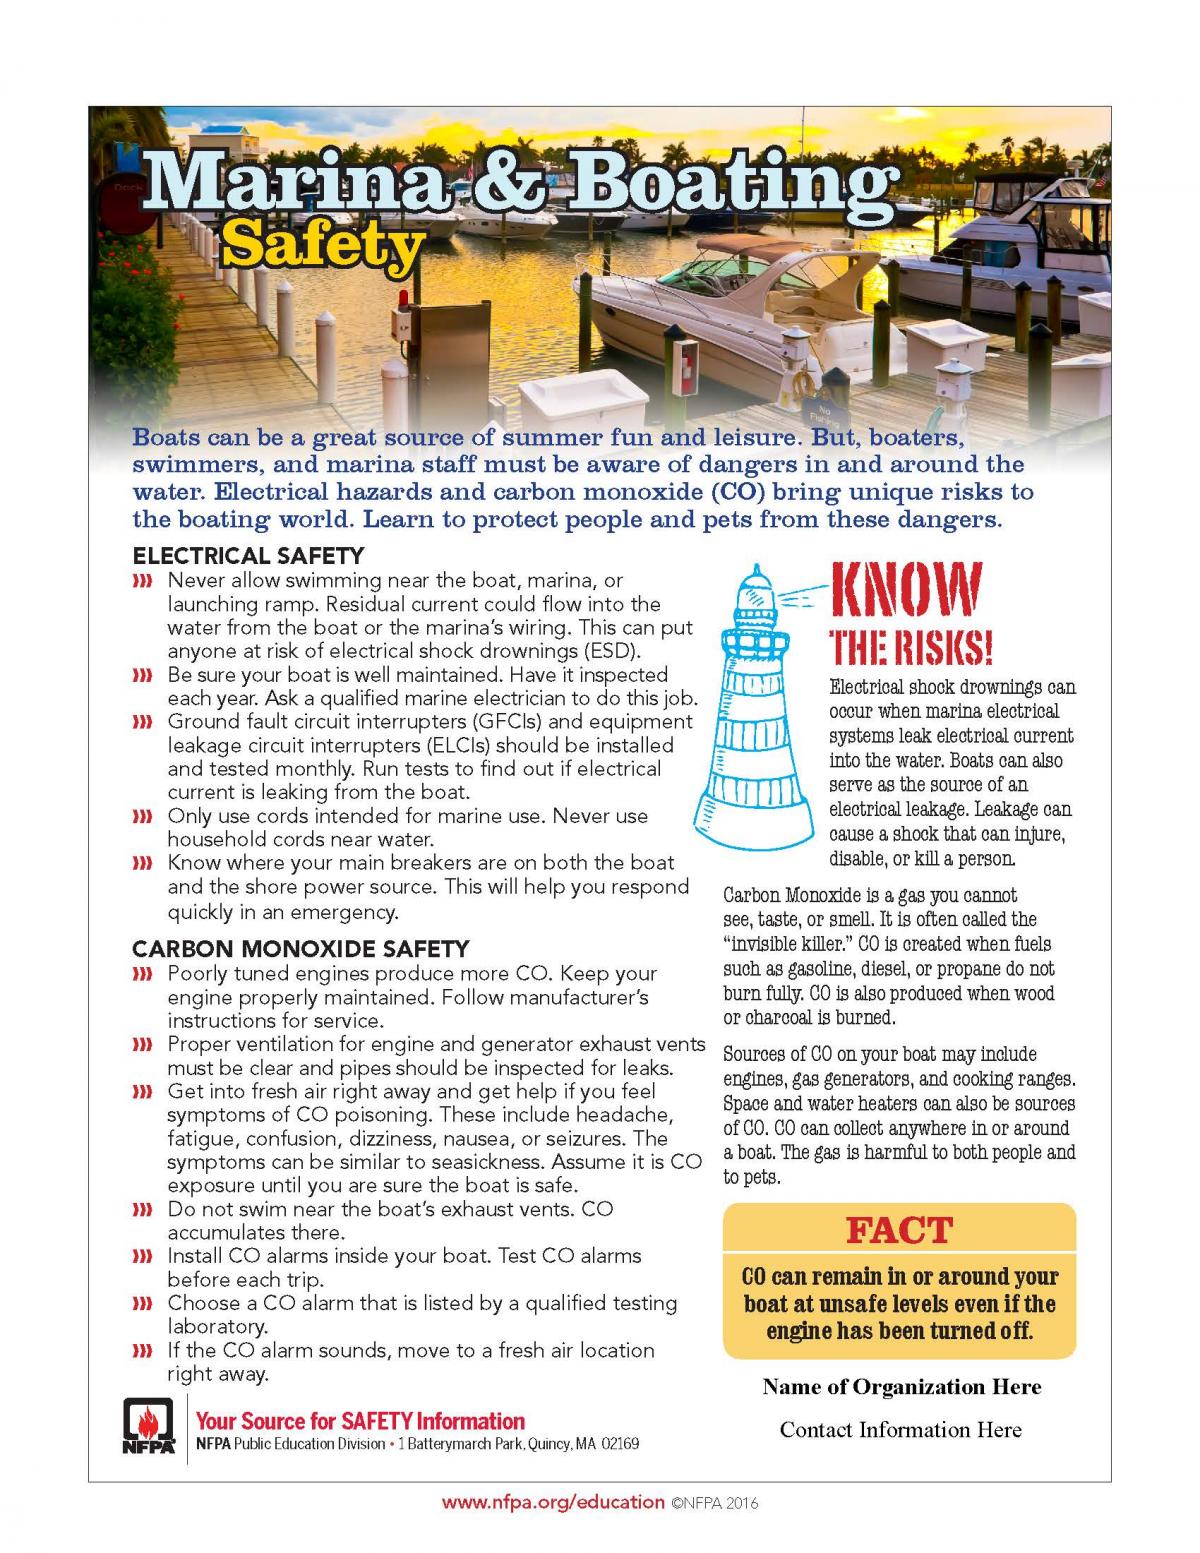 Safety Tips for Safe Boating